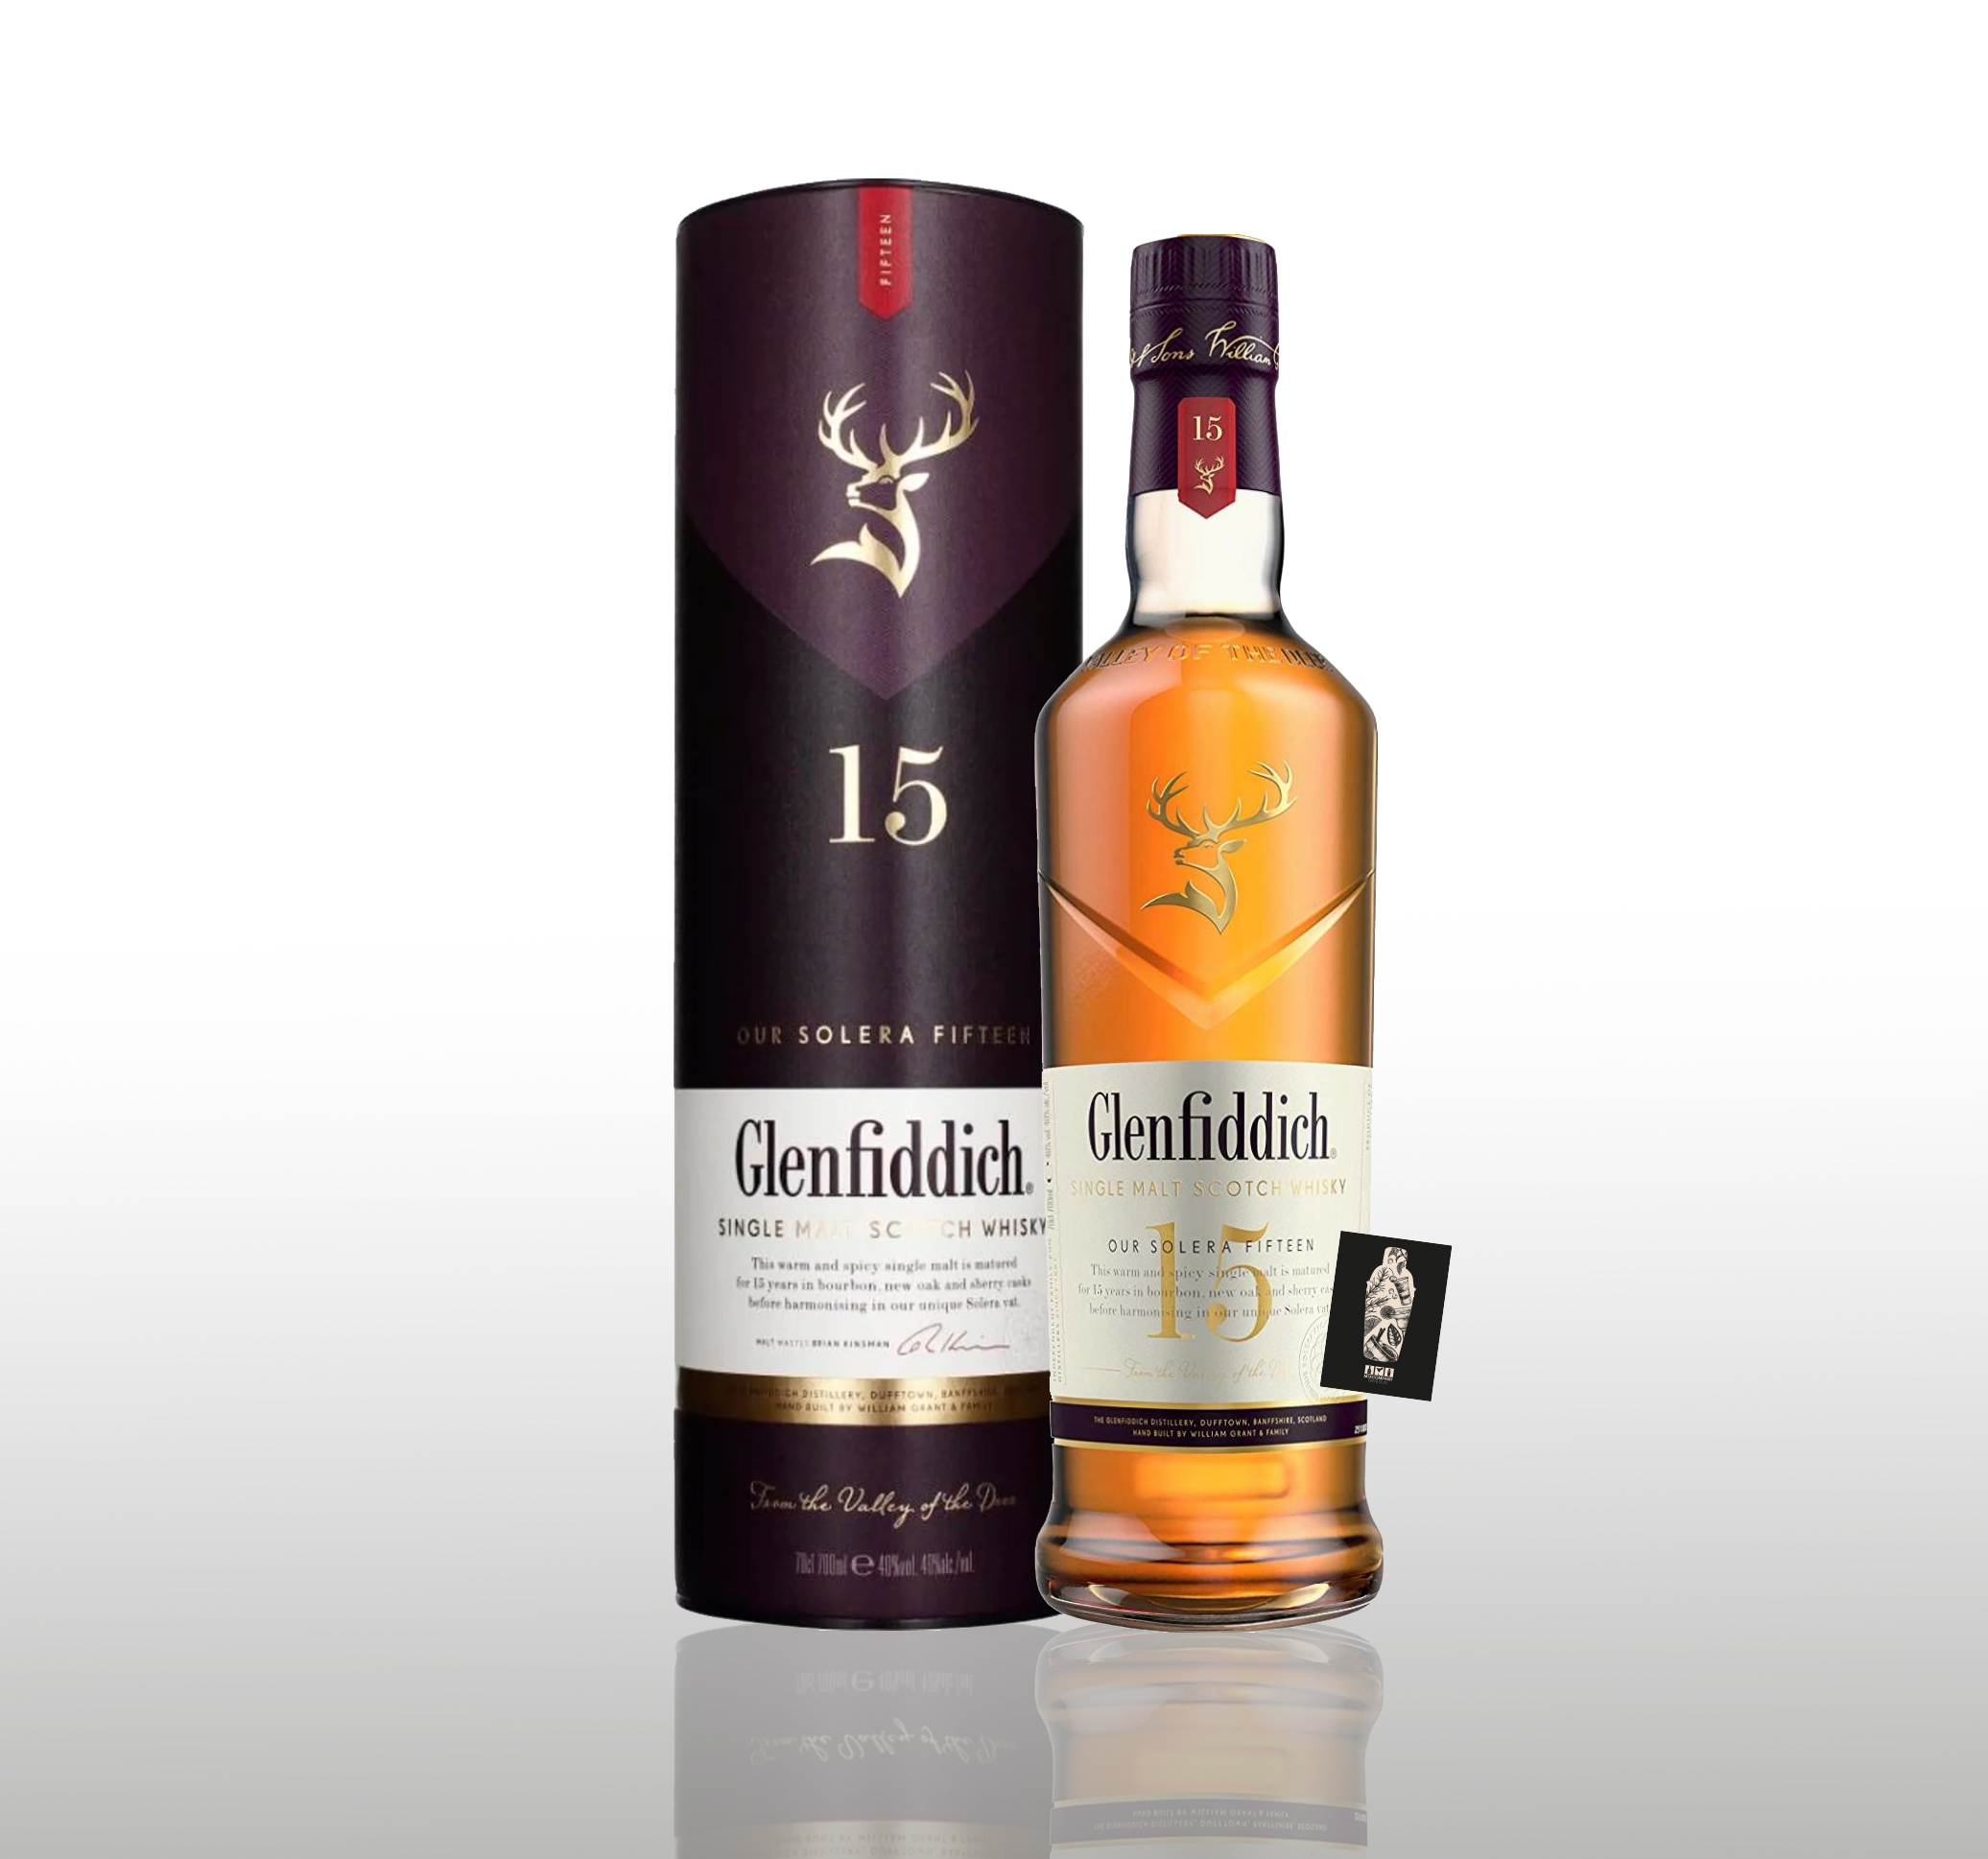 Glenfiddich Single Malt Scotch Whisky 15 years 0,7l (40% vol.) inkl. Geschenkbox (s. Bild) - [Enthält Sulfite]